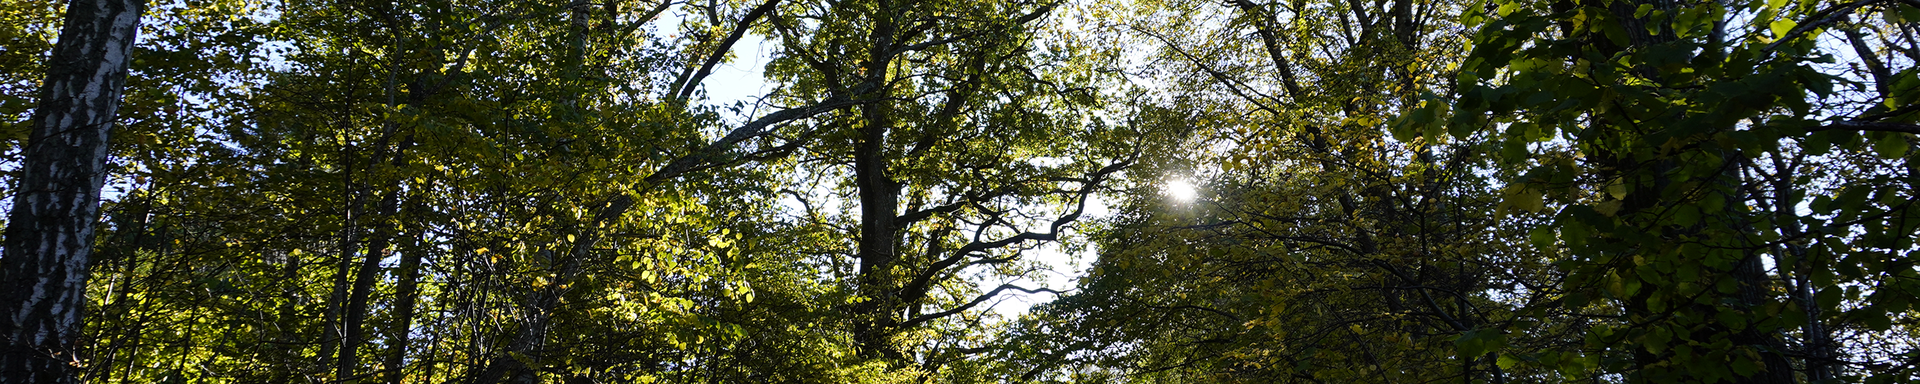 Grön frodig skog med sol bakom grenarana